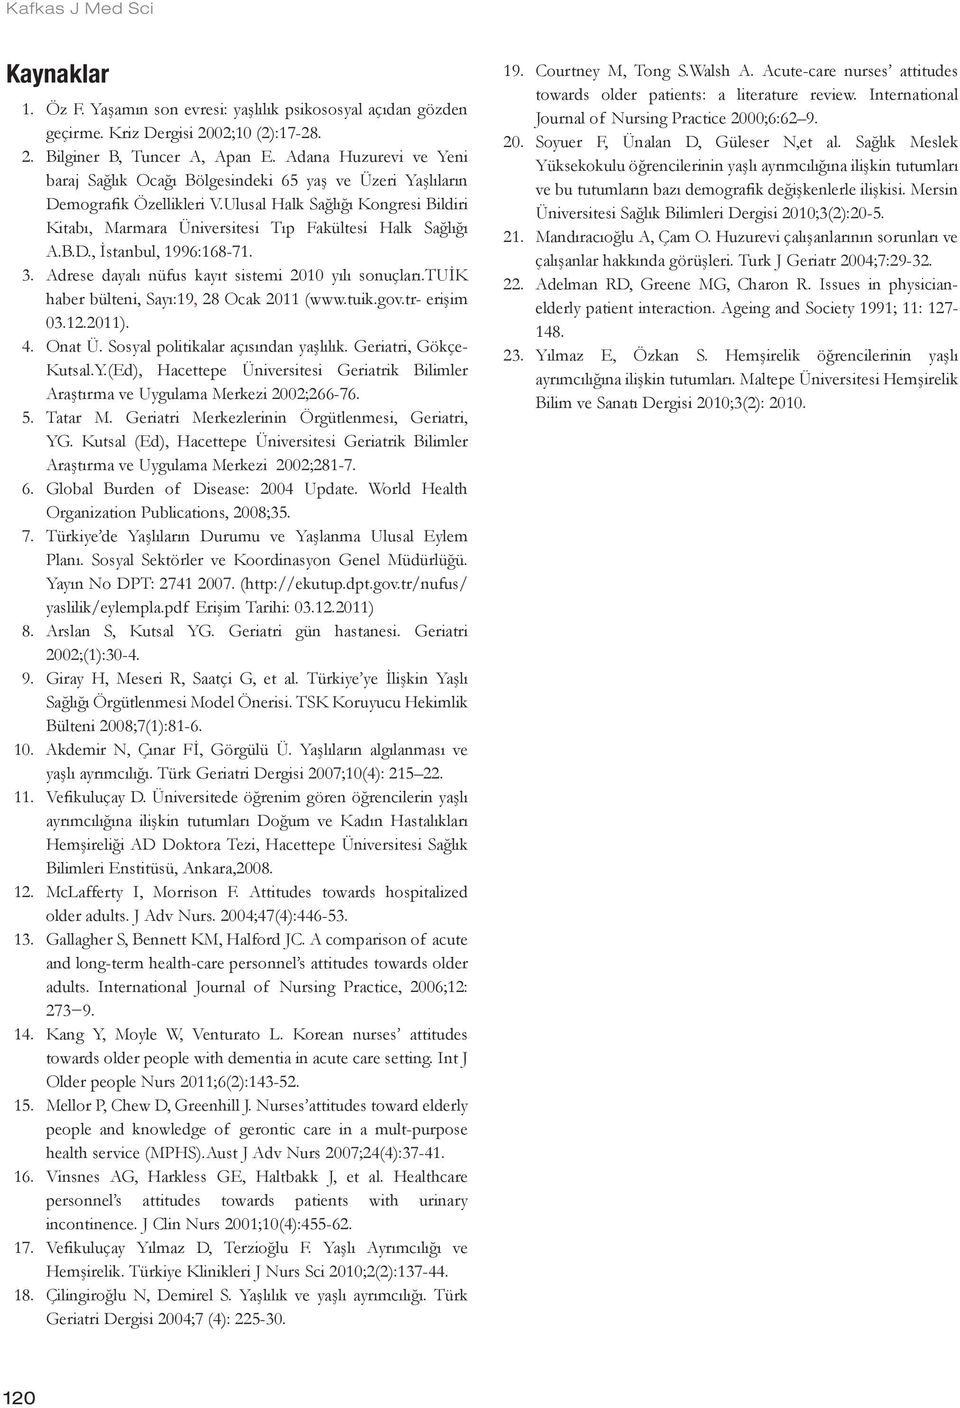 Ulusal Halk Sağlığı Kongresi Bildiri Kitabı, Marmara Üniversitesi Tıp Fakültesi Halk Sağlığı A.B.D., İstanbul, 1996:168-71. 3. Adrese dayalı nüfus kayıt sistemi 2010 yılı sonuçları.